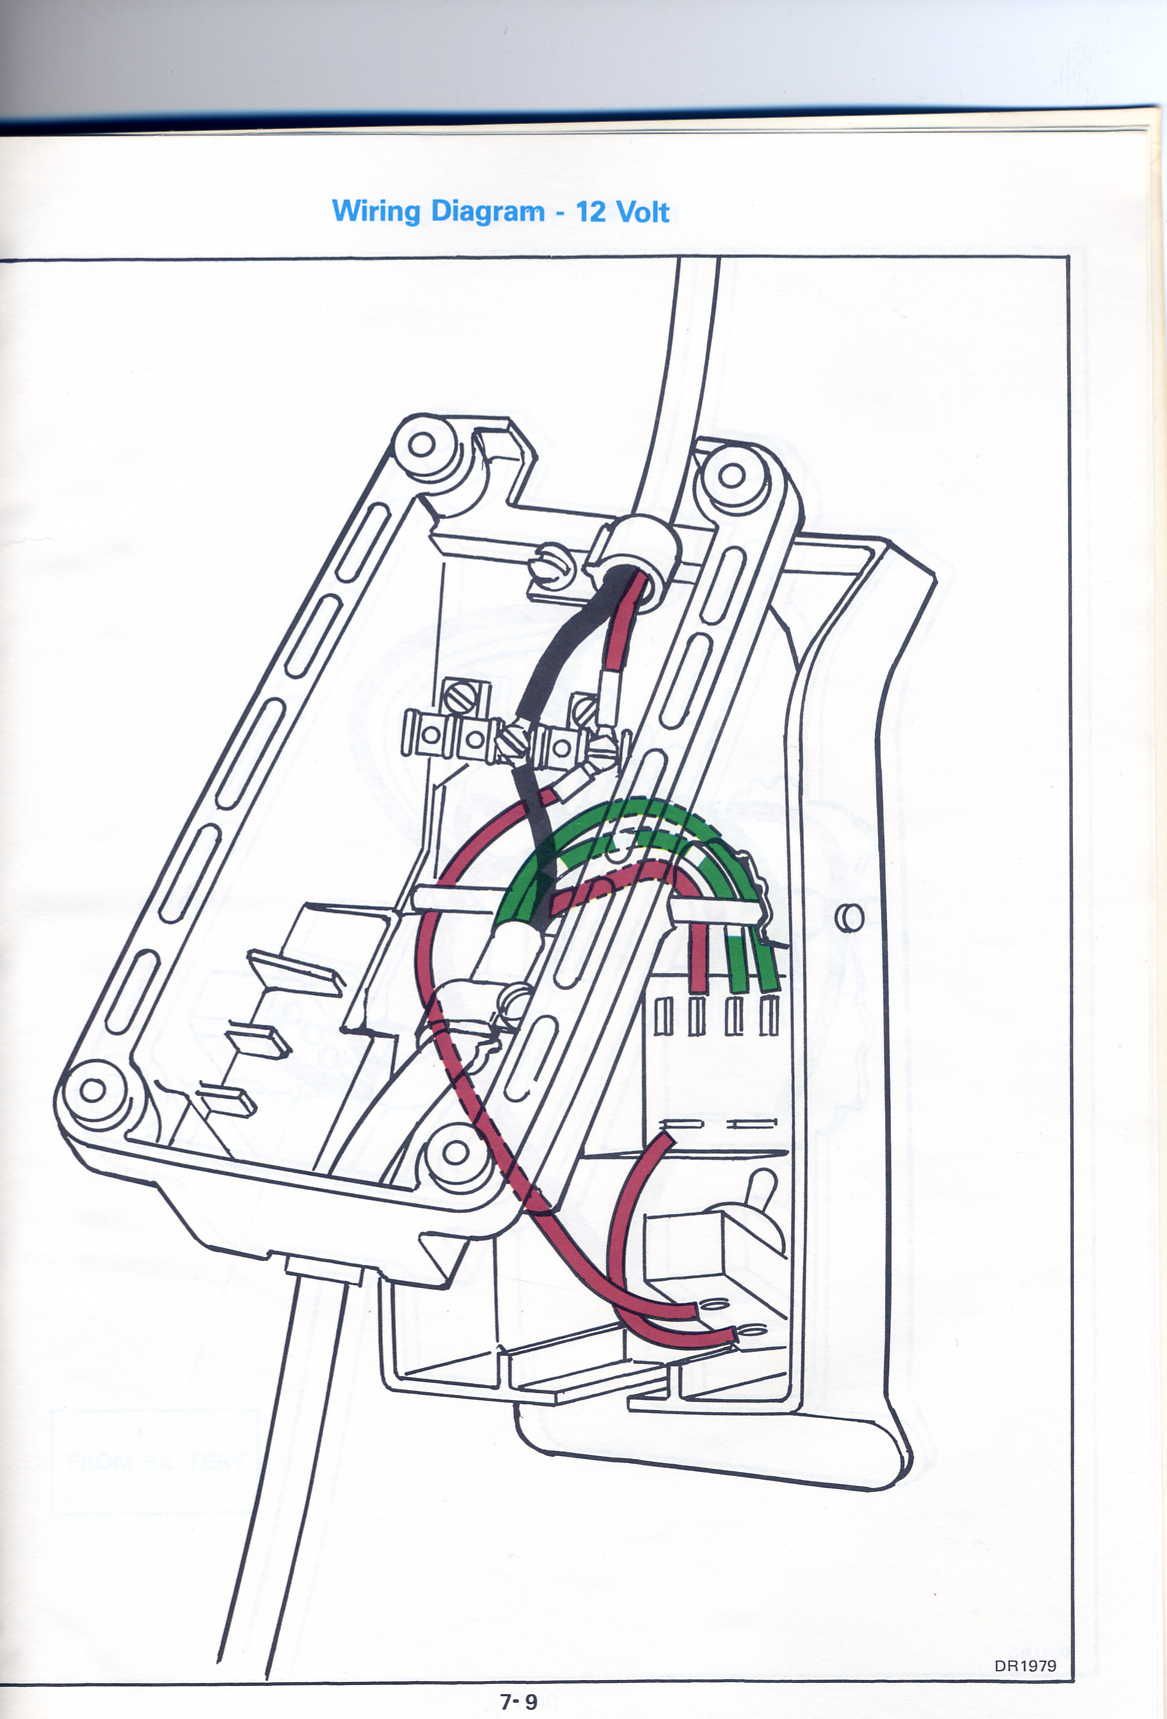 bigfoot trolling motor switch wiring diagram